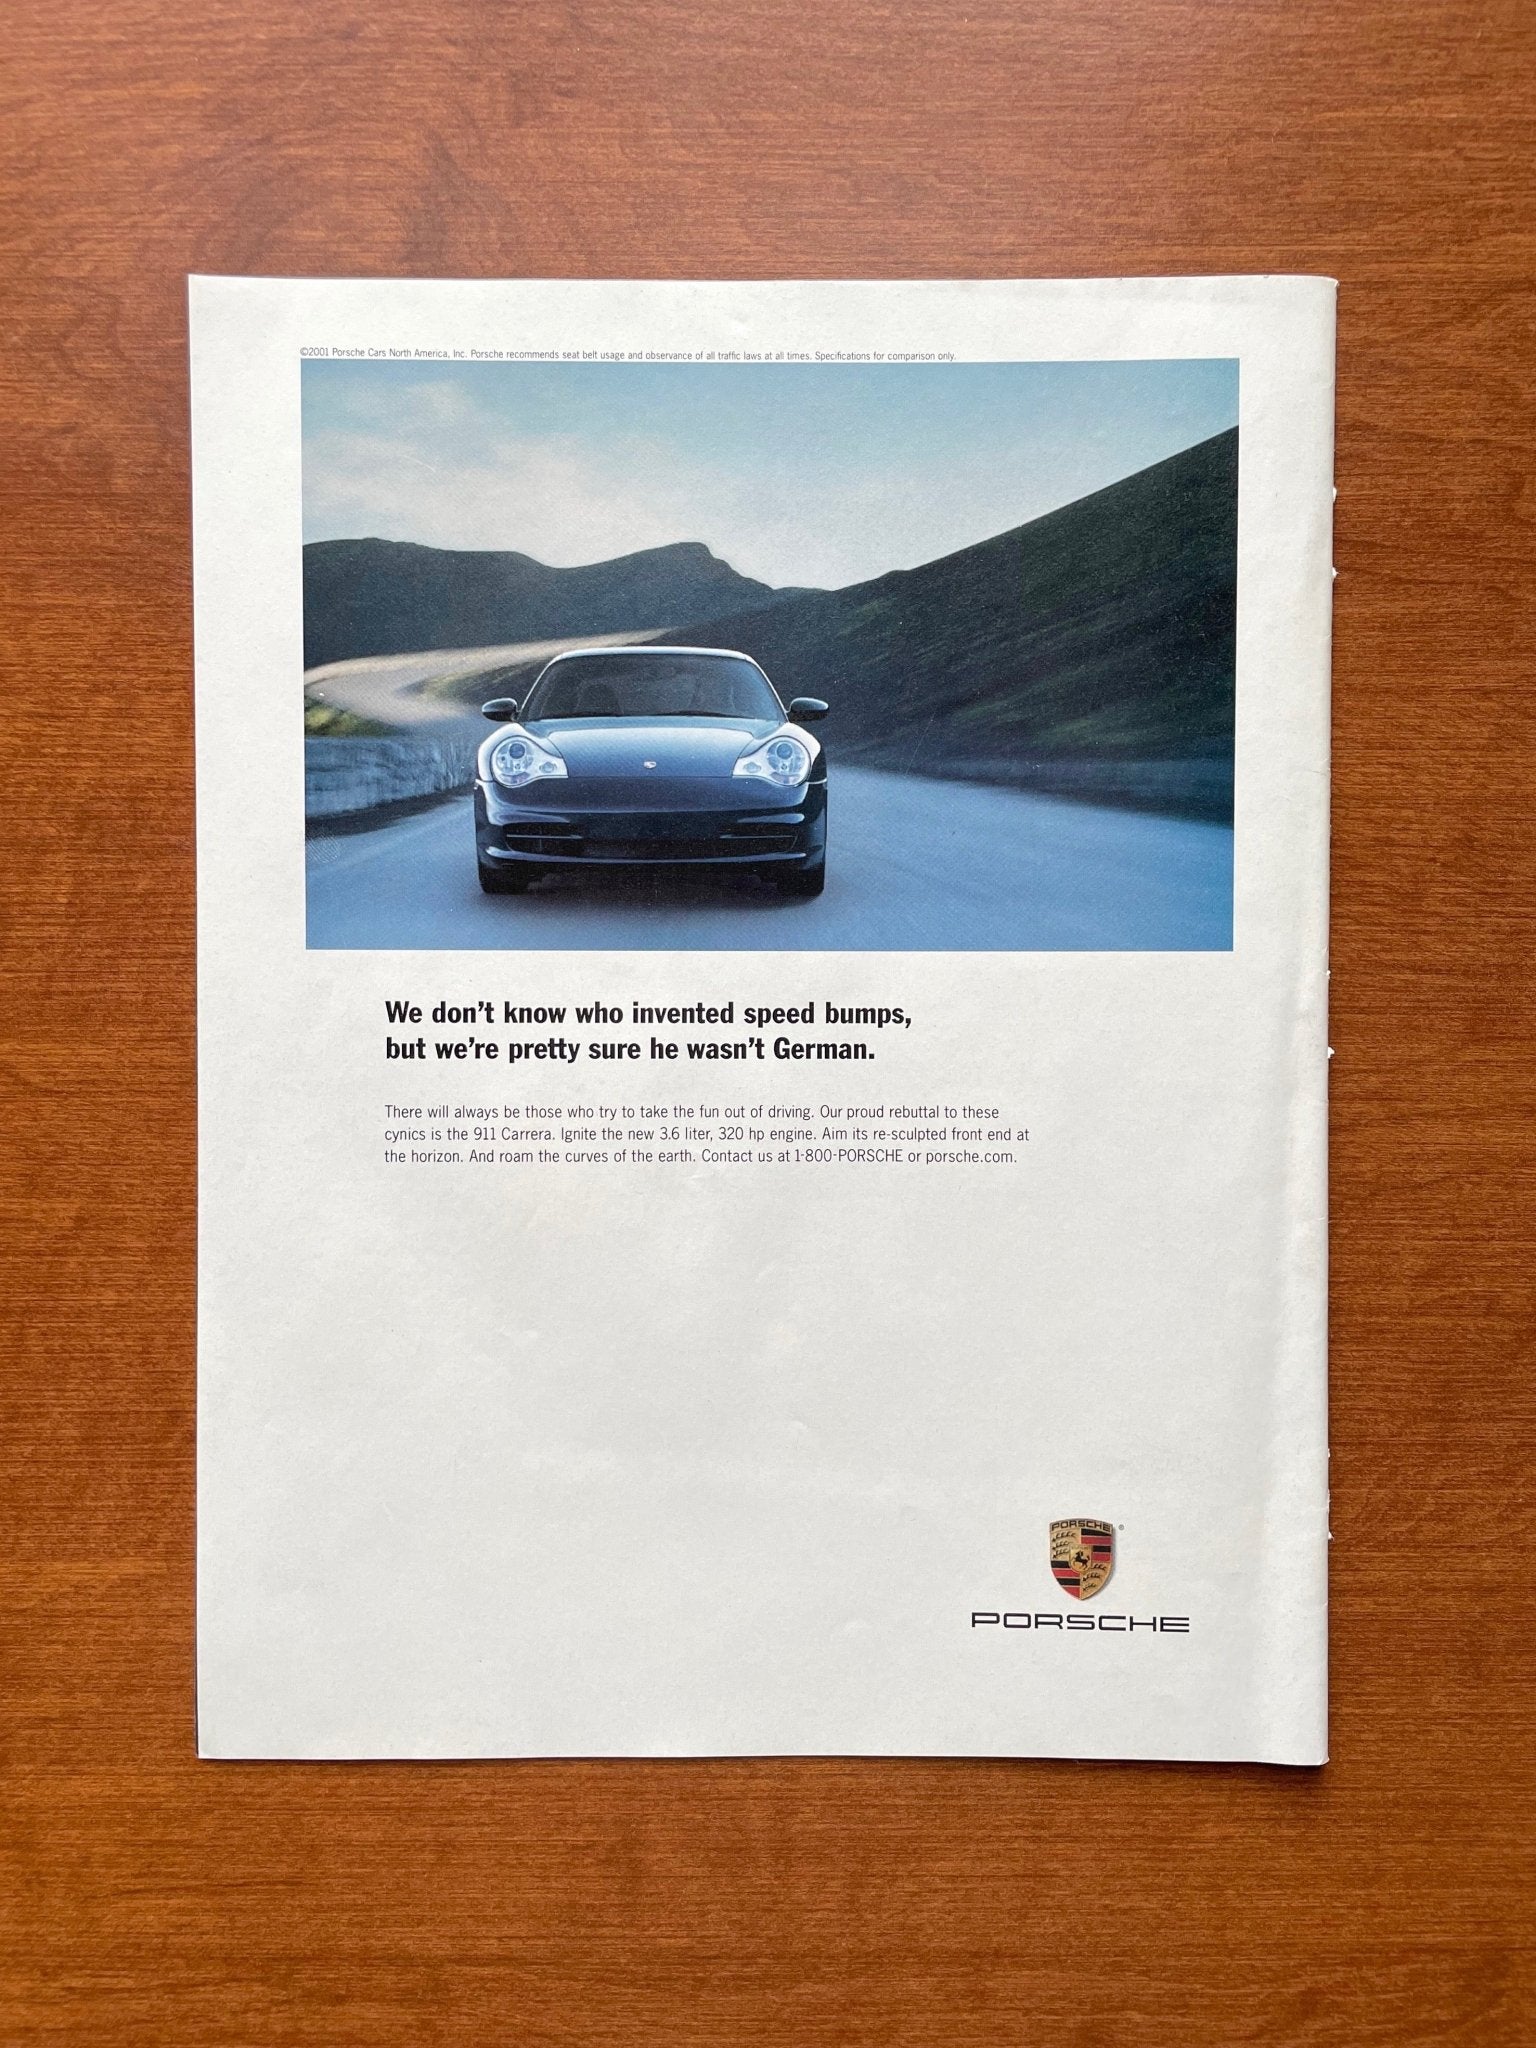 2002 Porsche 911 Carrera "speed bumps... wasn't German." Advertisement